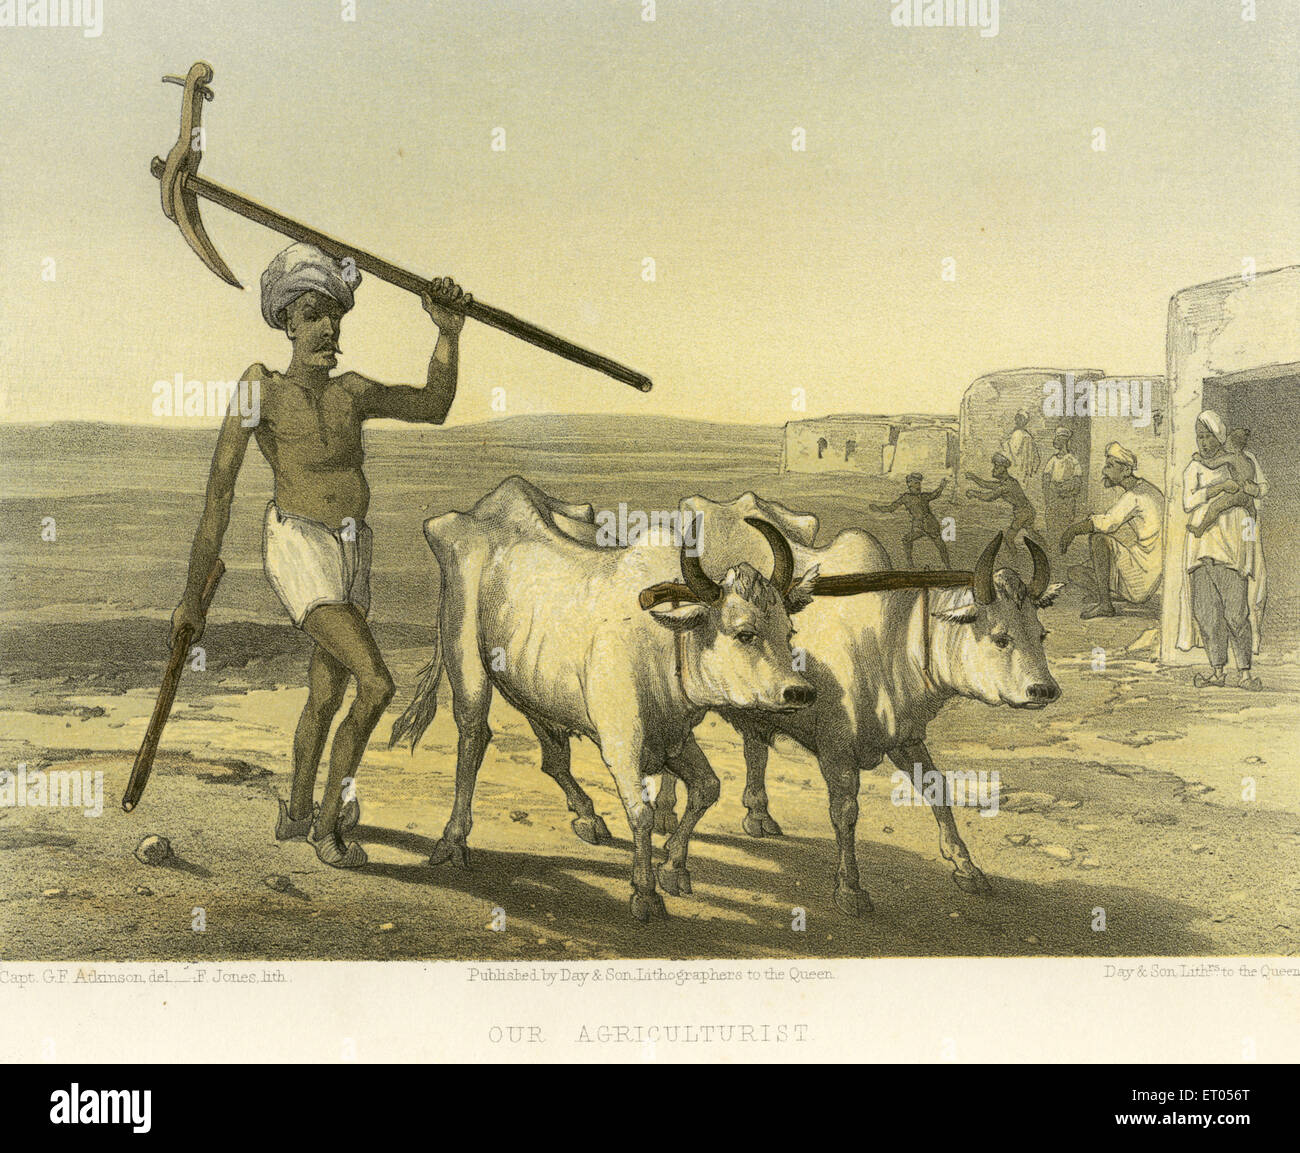 Granjero con abultamiento; imágenes coloniales indias; granjero India; nuestro agricultor; India; Asia; Asia; India; imagen antigua de la vendimia de 1900s Foto de stock